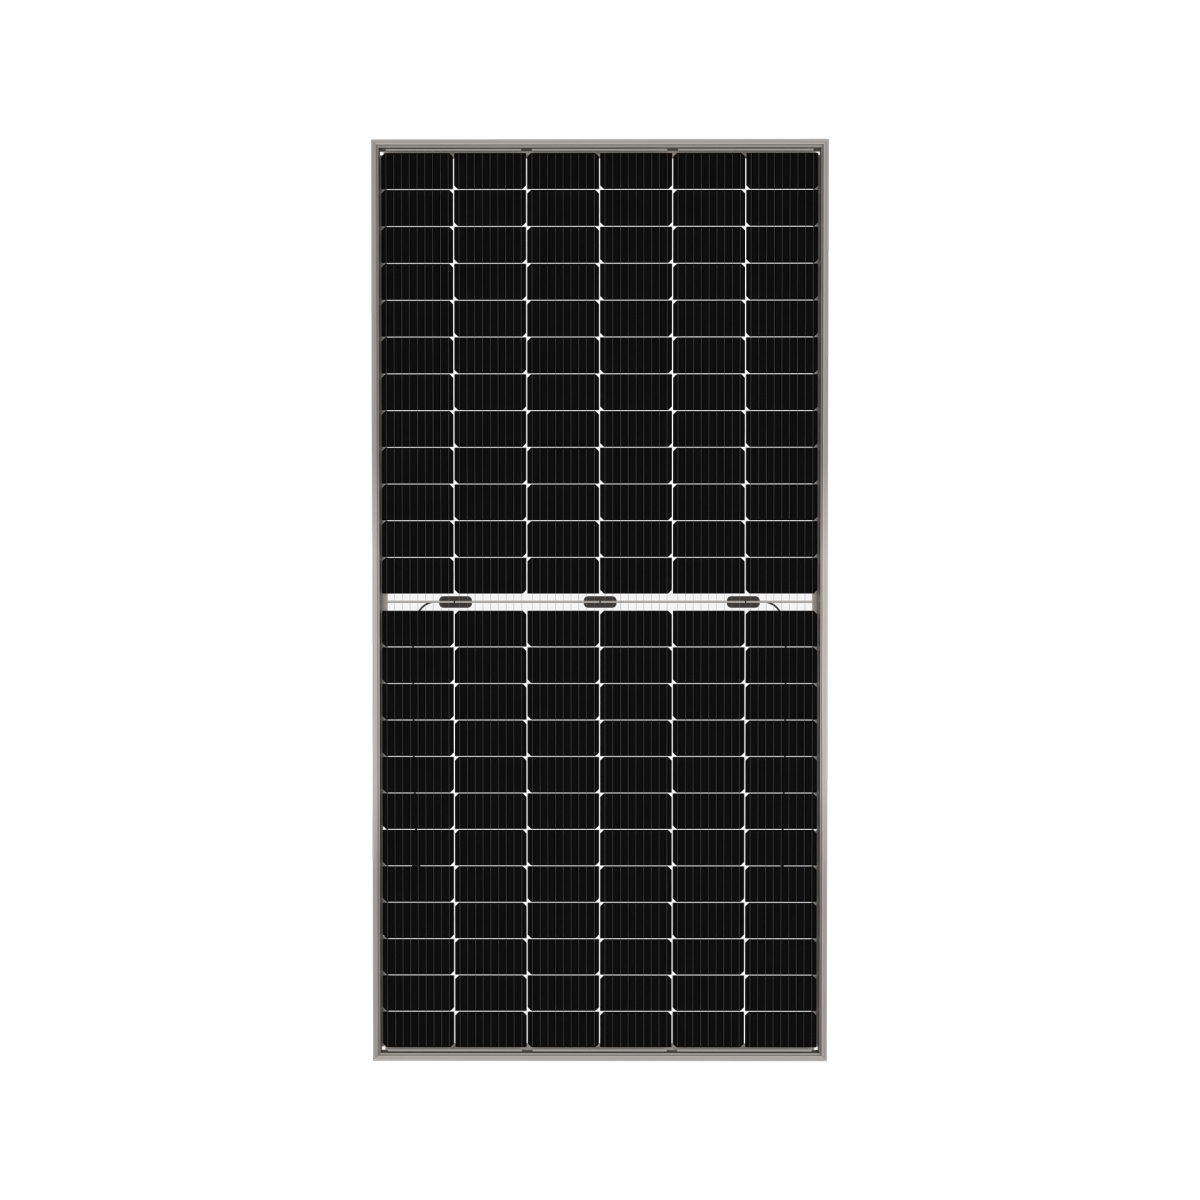 TommaTech 430Wp M6 144PM Cells Bifacial Half-Cut MB Solar Panel